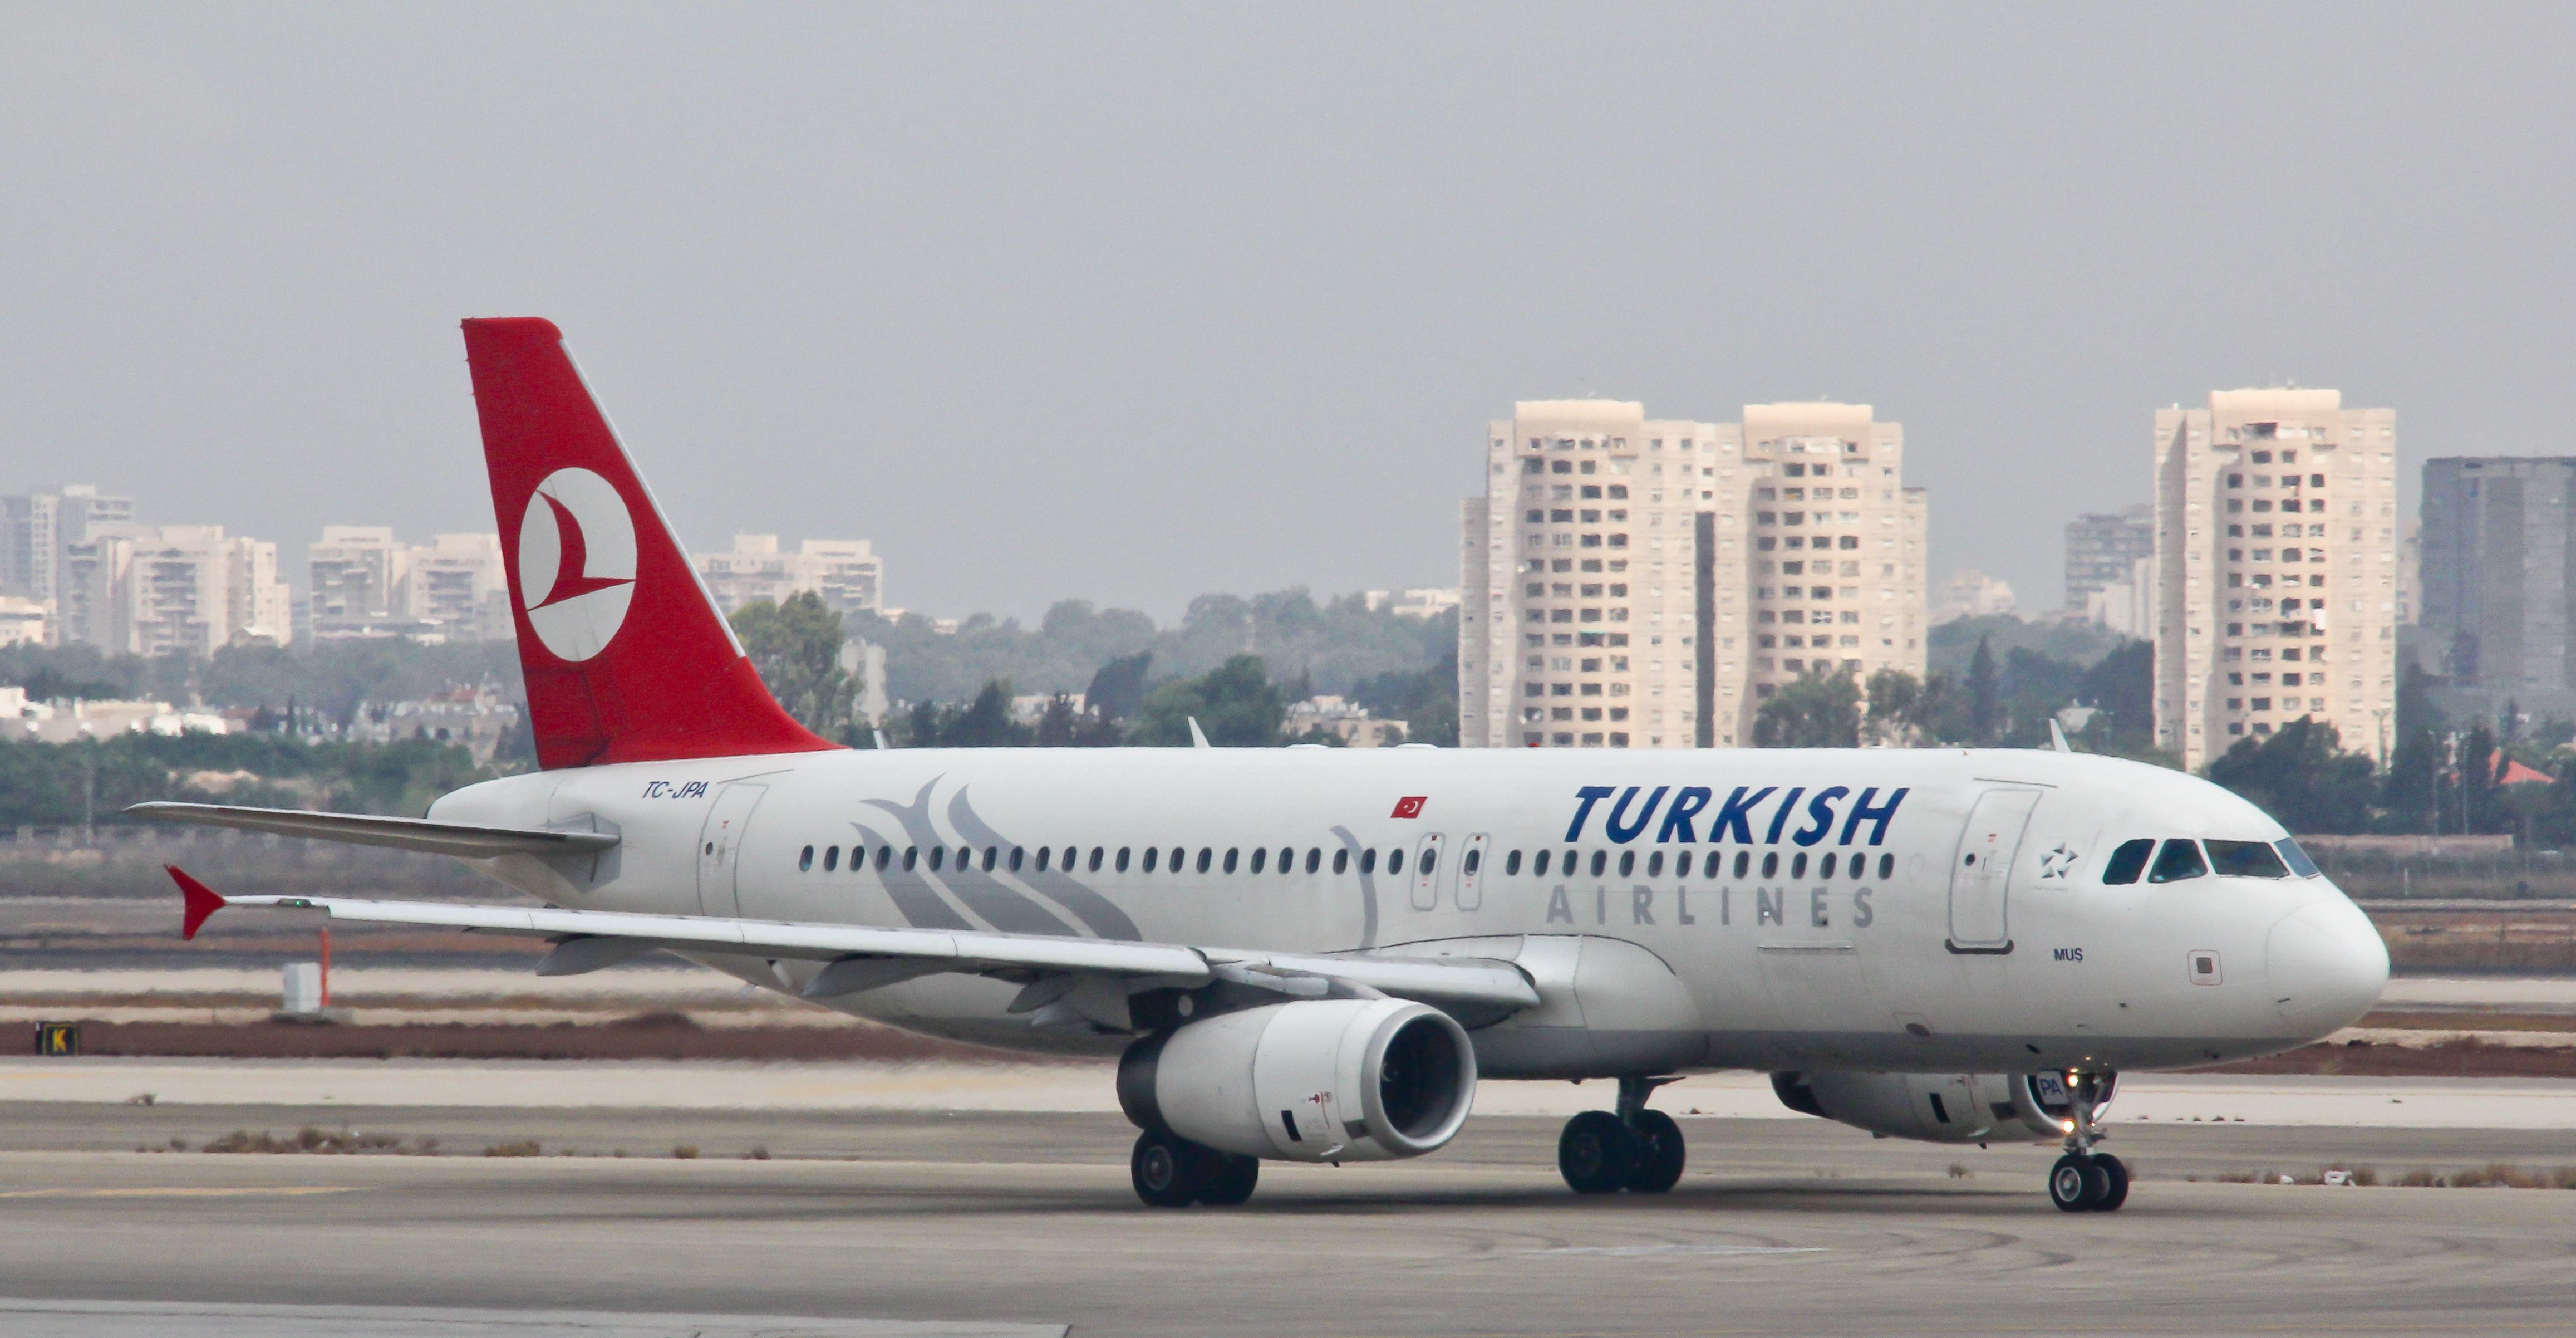 Turkish Airlines despide a más de 200 trabajadores después del golpe de estado fallido